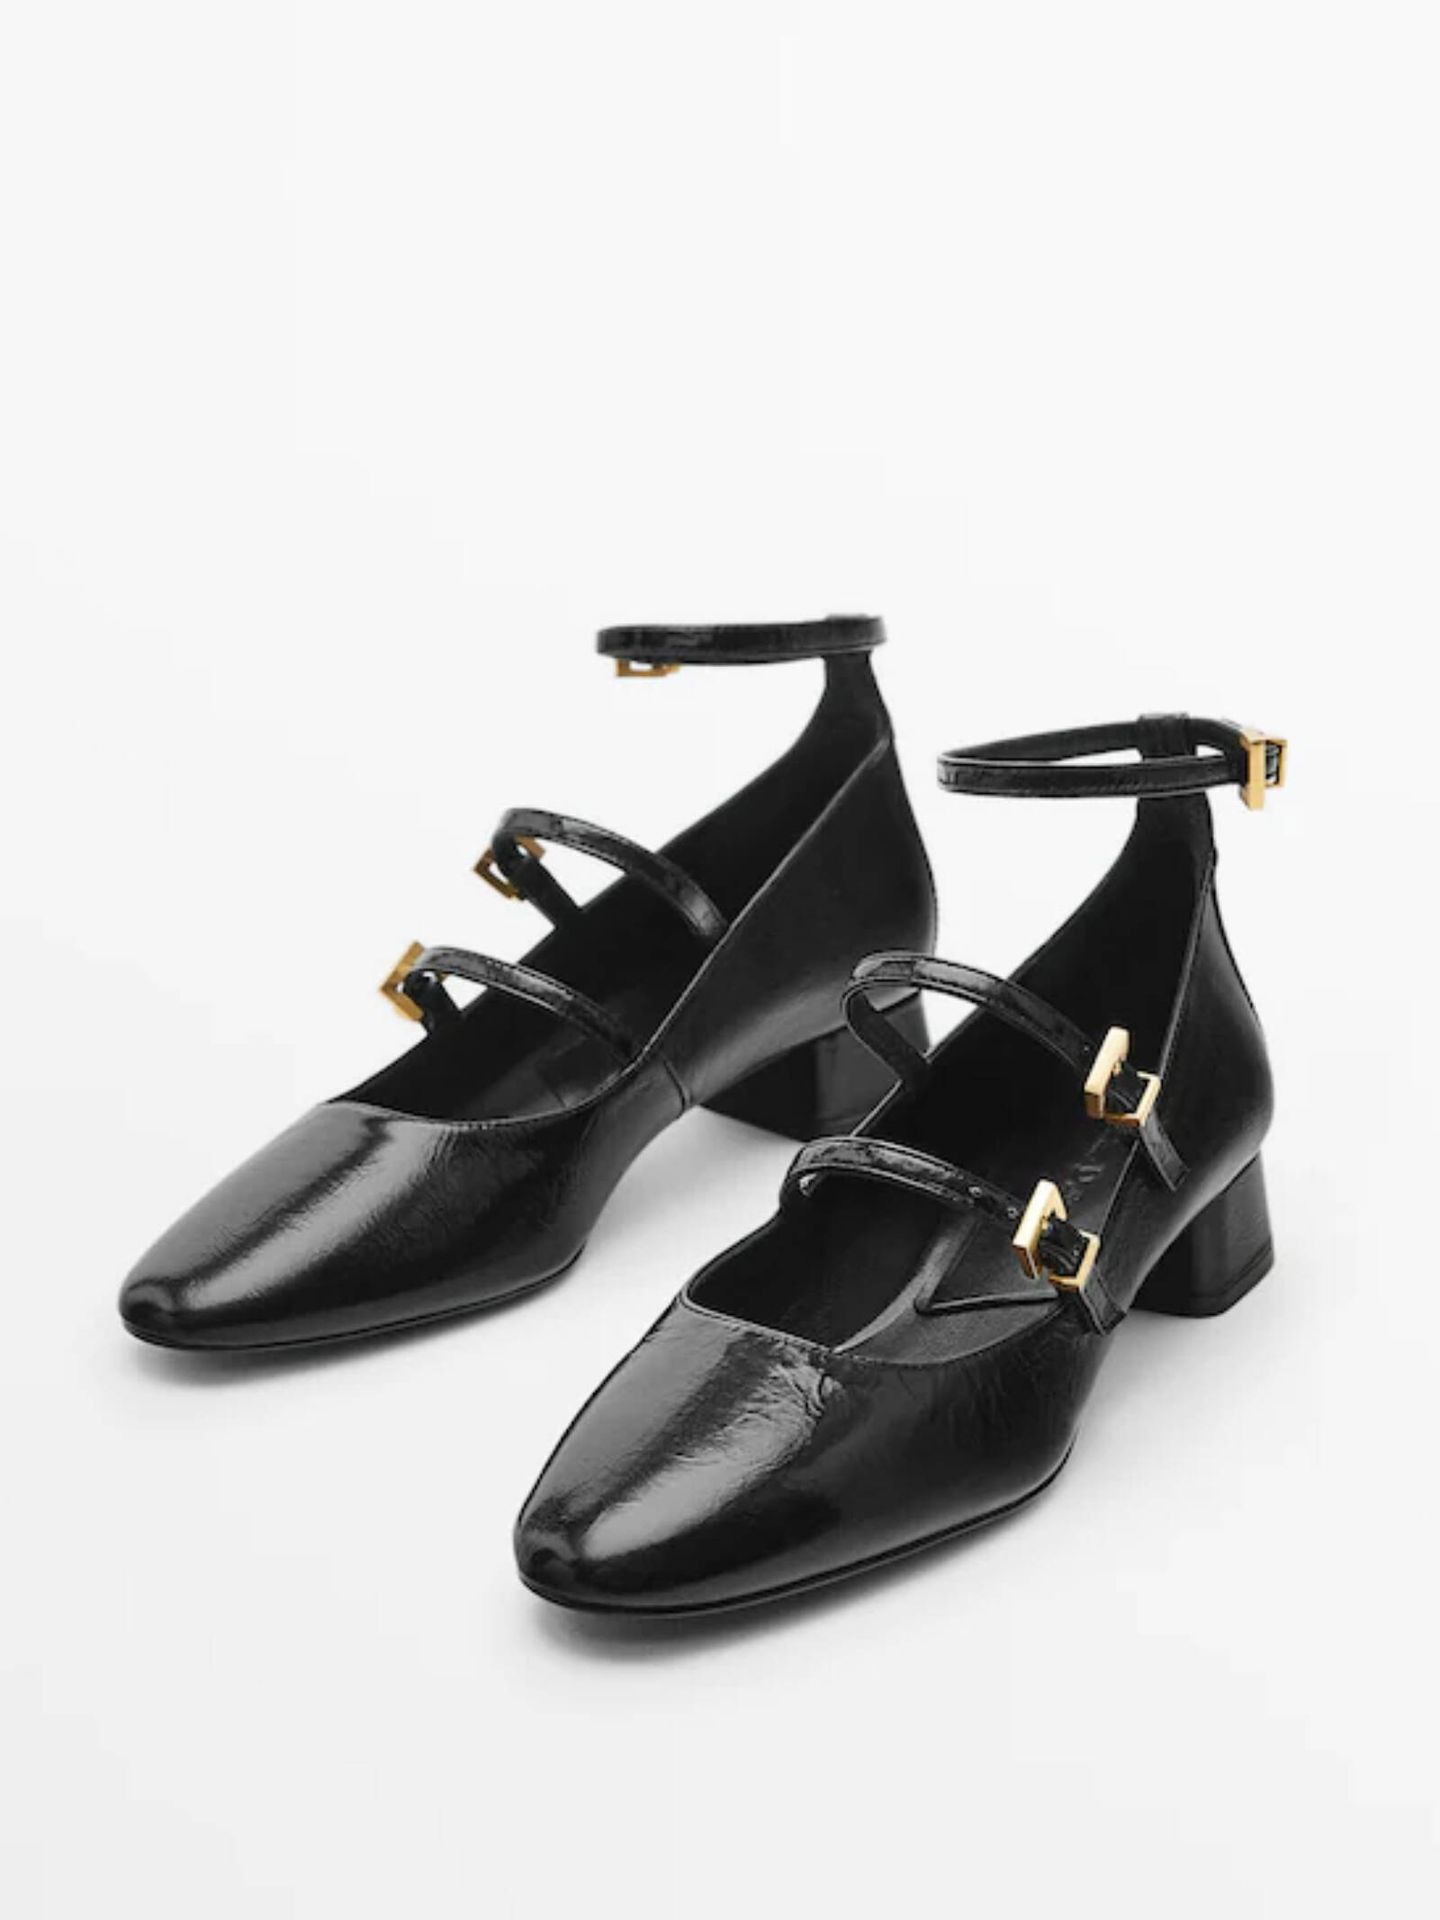 MODA: Los zapatos planos más cómodos y elegantes para vestir a diario con  mucho estilo están en Massimo Dutti